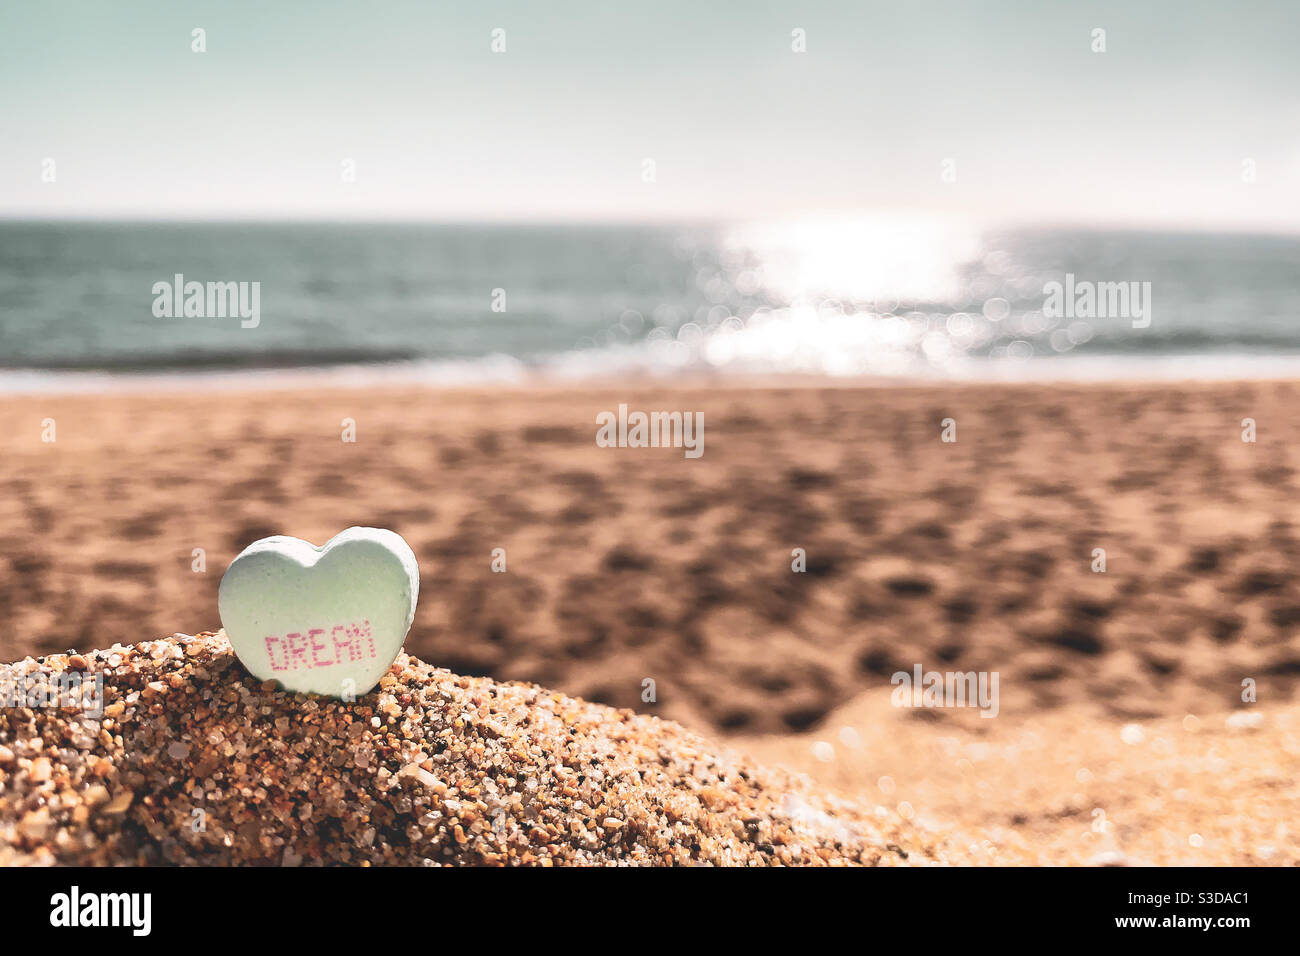 Bonbon Herz mit dem Wort "Traum" darauf, sitzen im Sand eines sonnigen Strandes mit dem Ozean verschwommen in der Ferne. Stockfoto